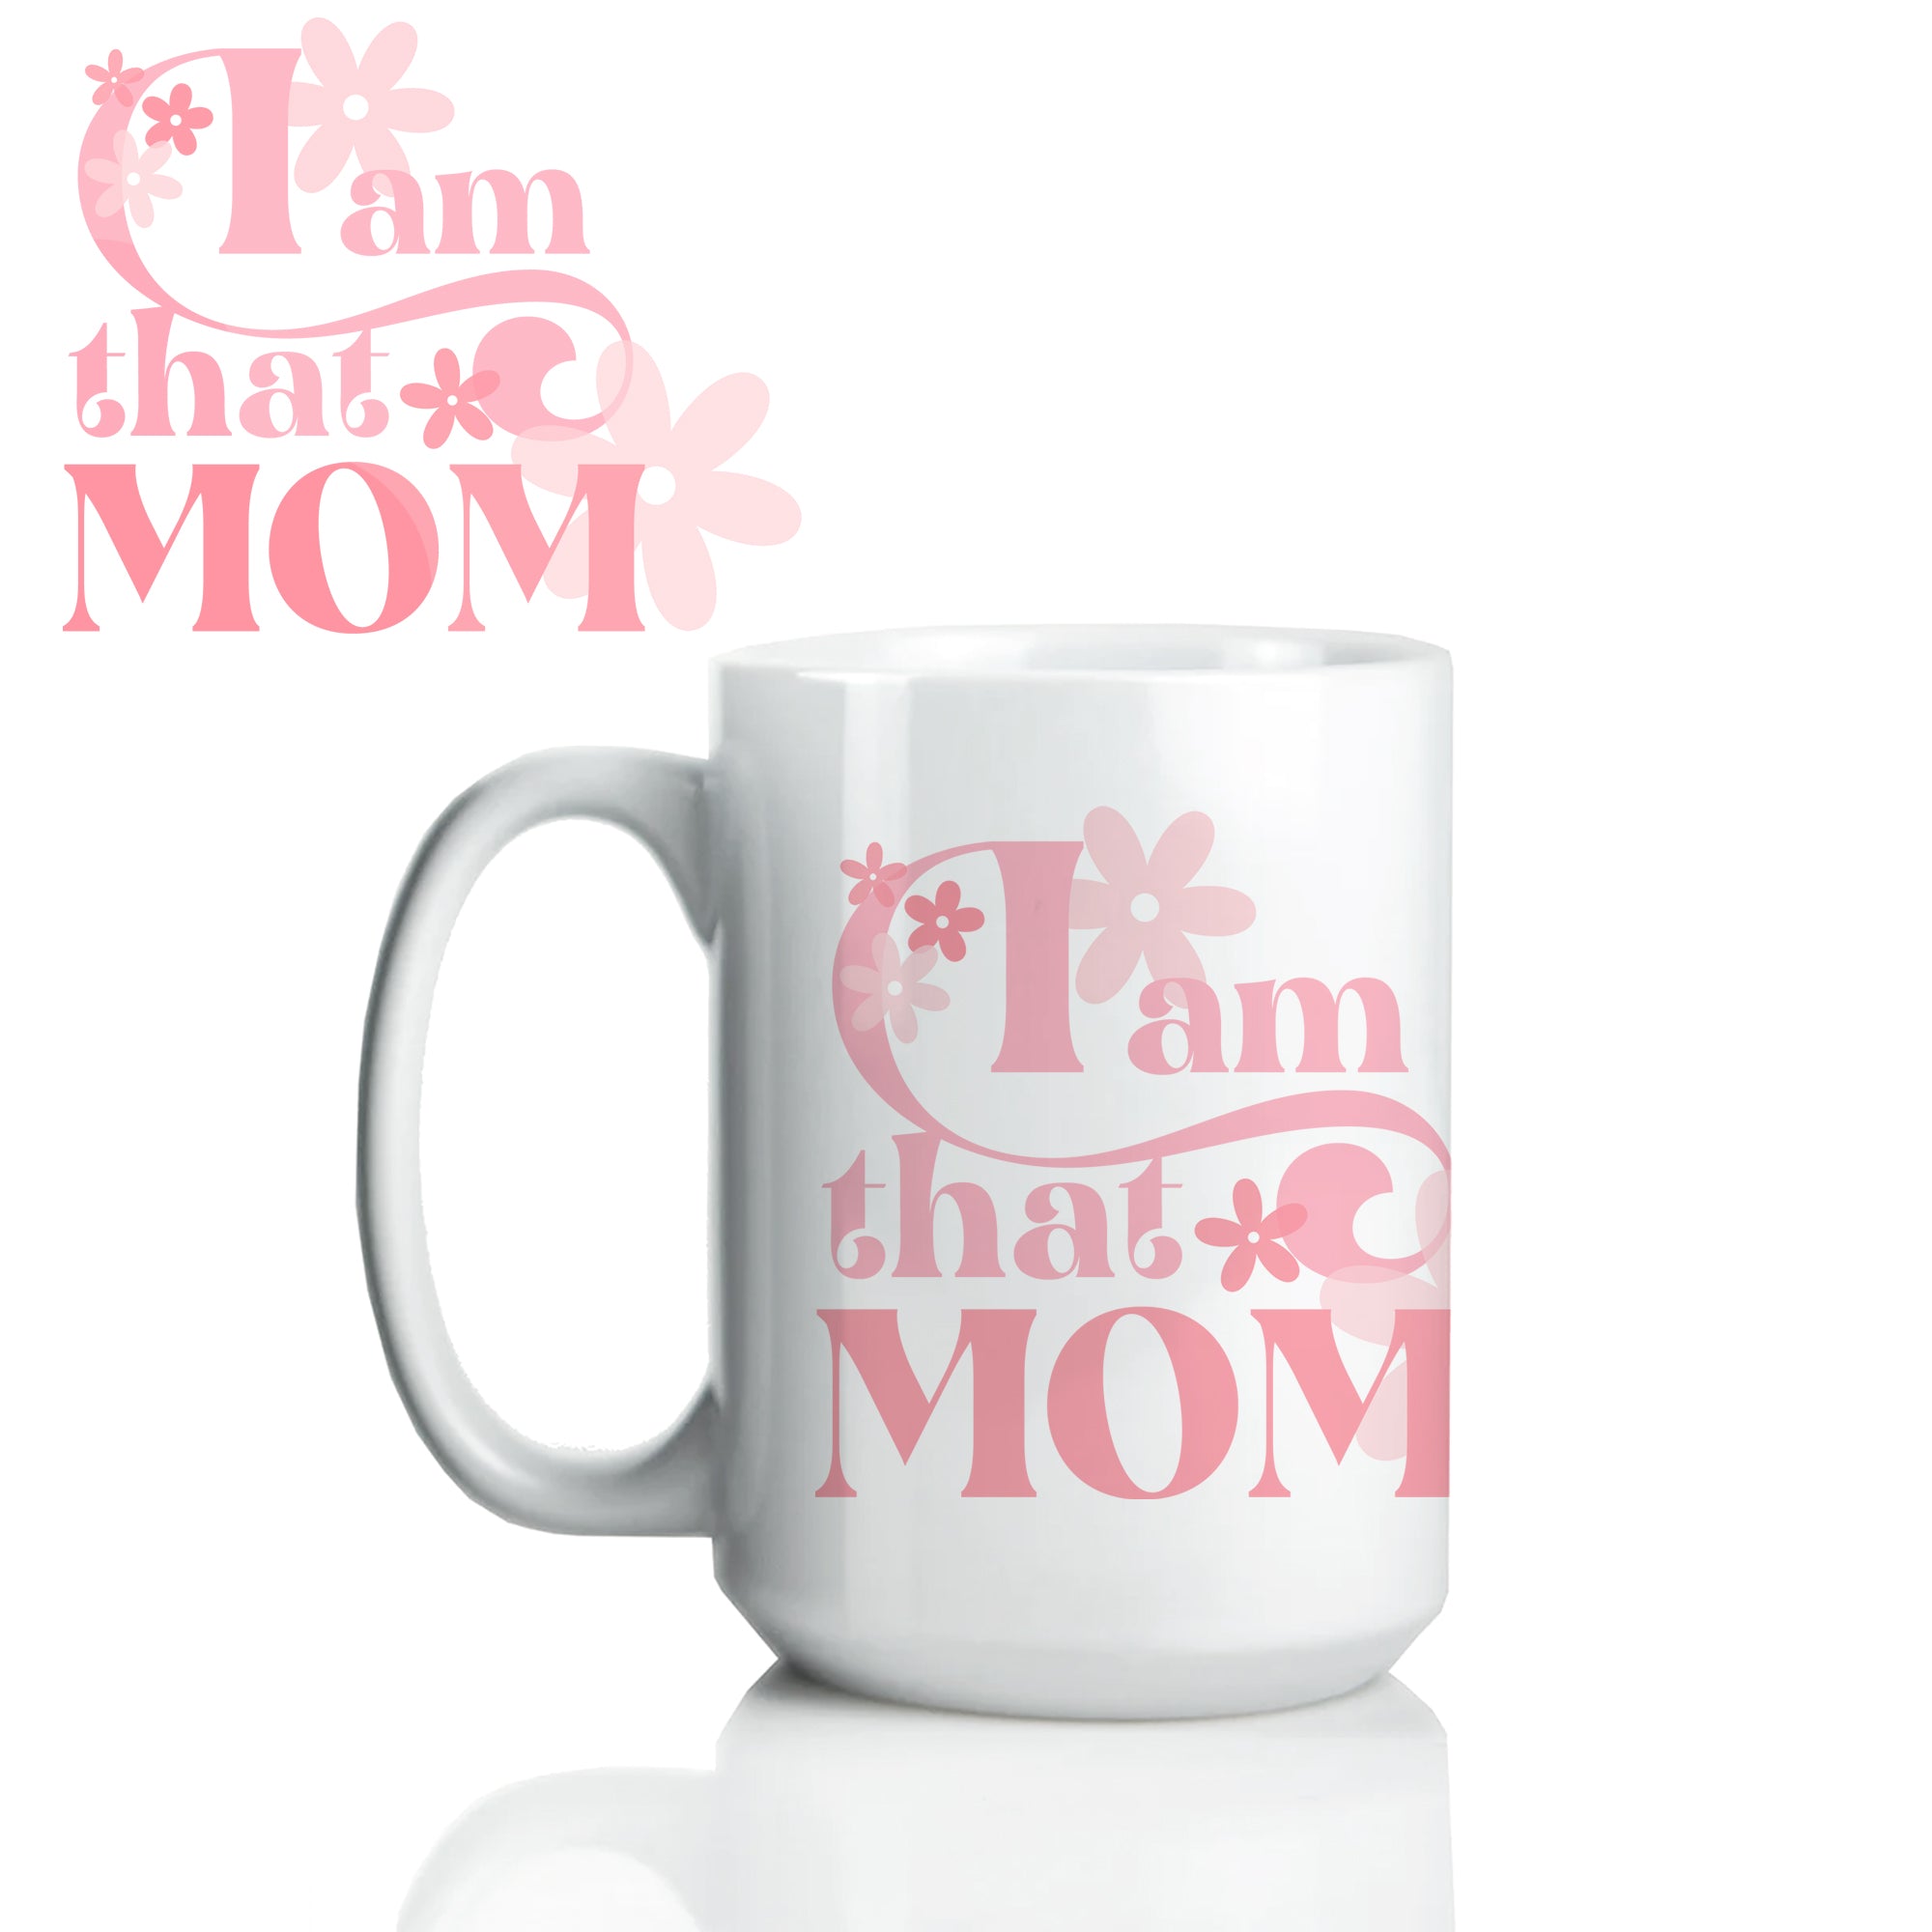 I am that MOM - Bottle/Tumbler/Mug